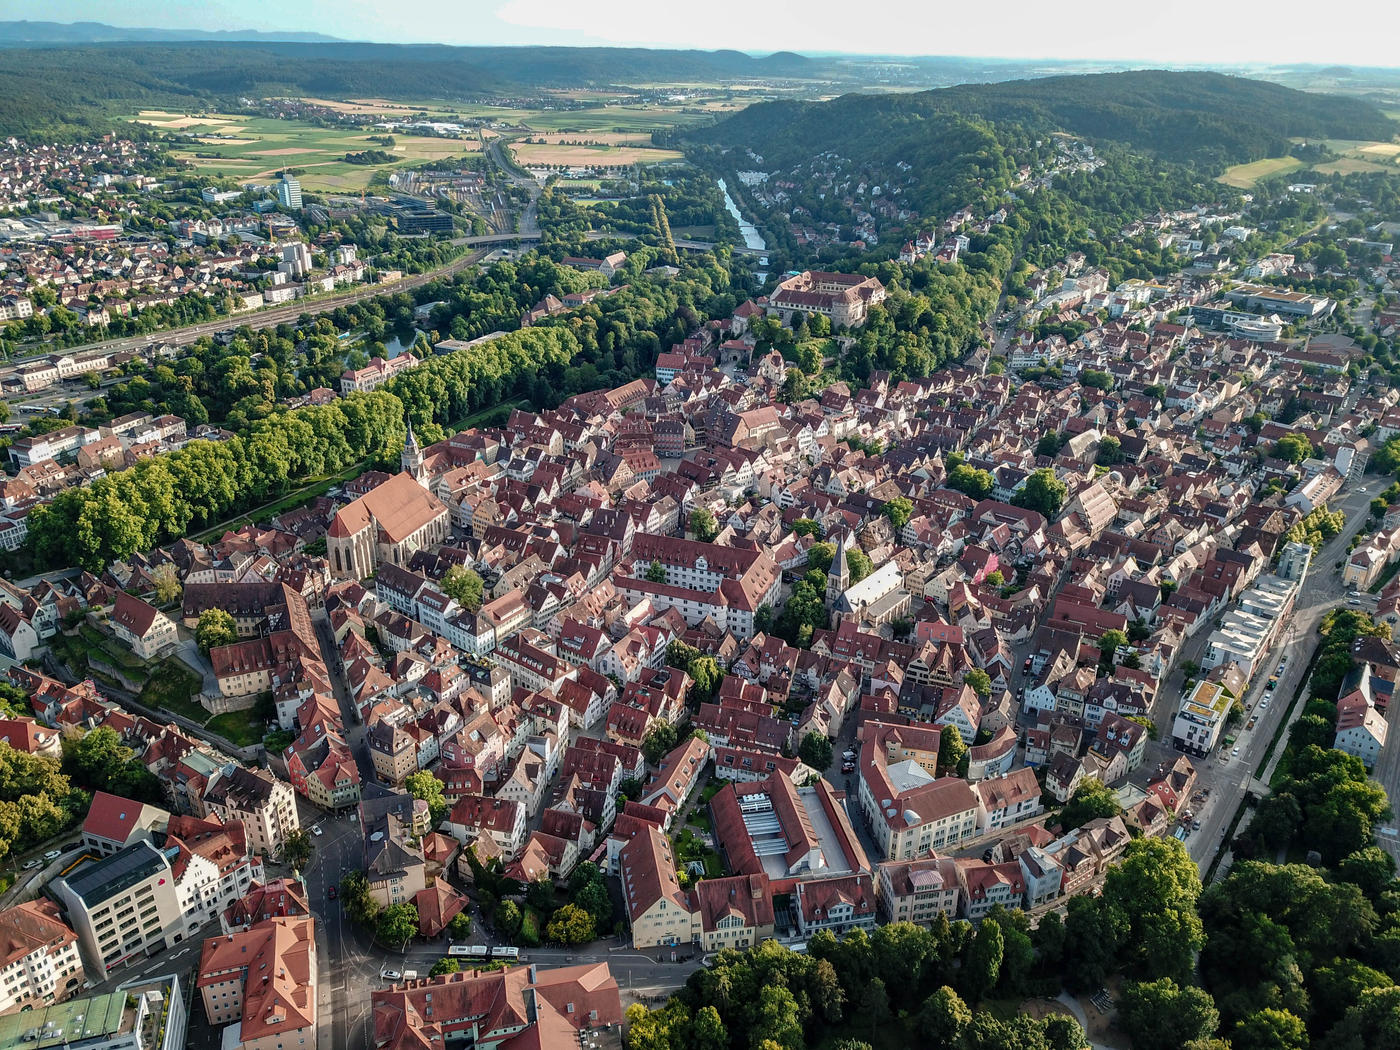 Tübingen: History meets joie de vivre